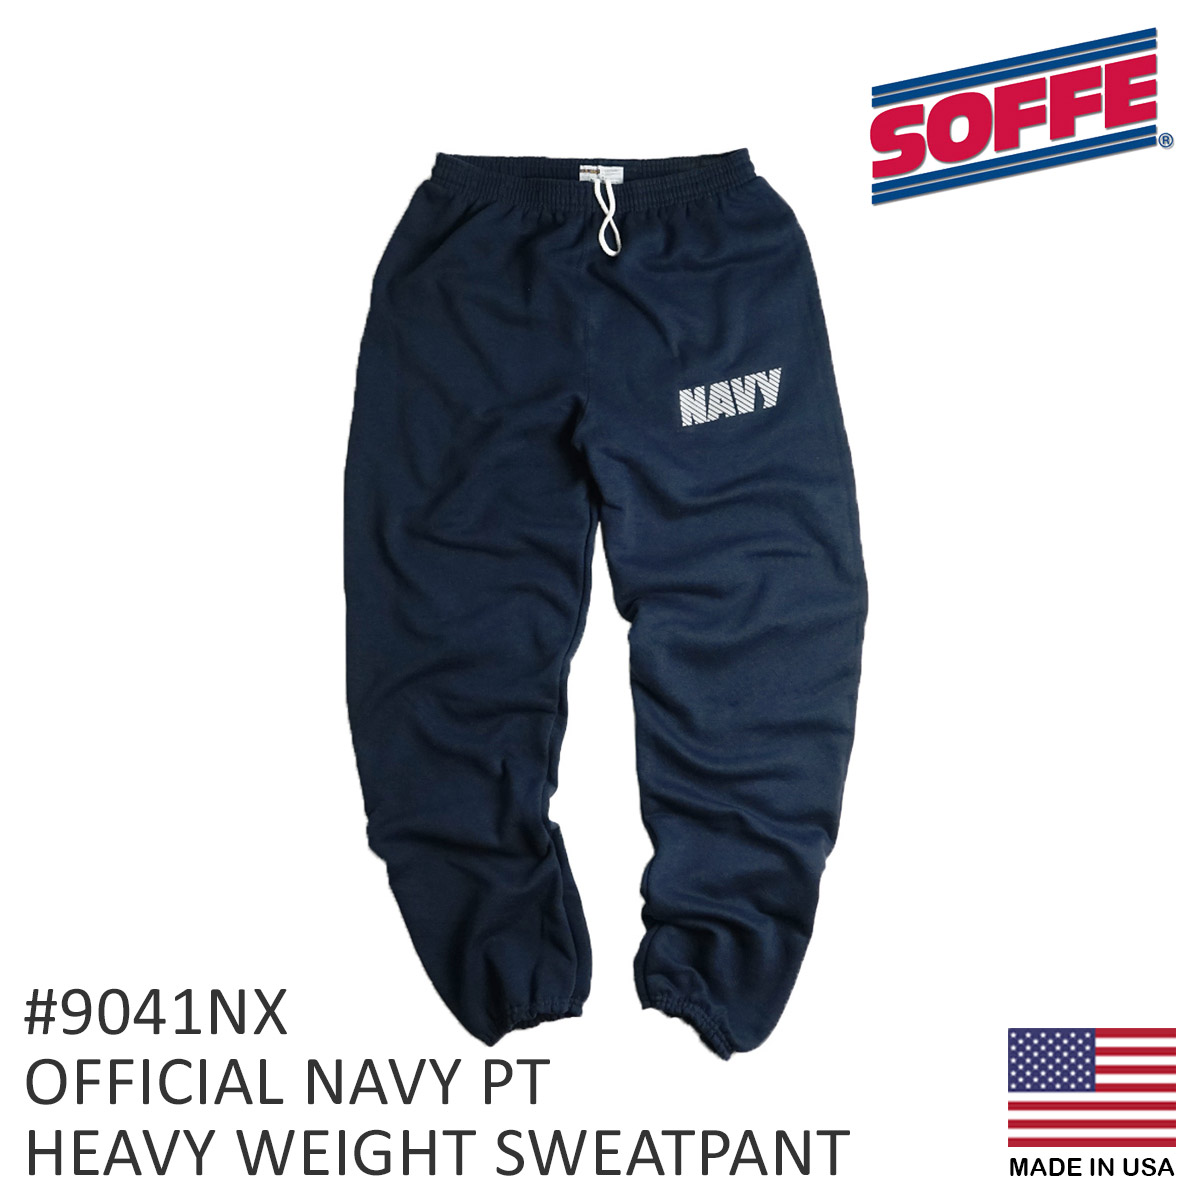 ソフィ SOFFE 米海軍 NAVY 公式 ヘビーウエイト PT スウェットパンツ 9041NX メンズ S-XXL スウェット パンツ アメリカ製  米国製